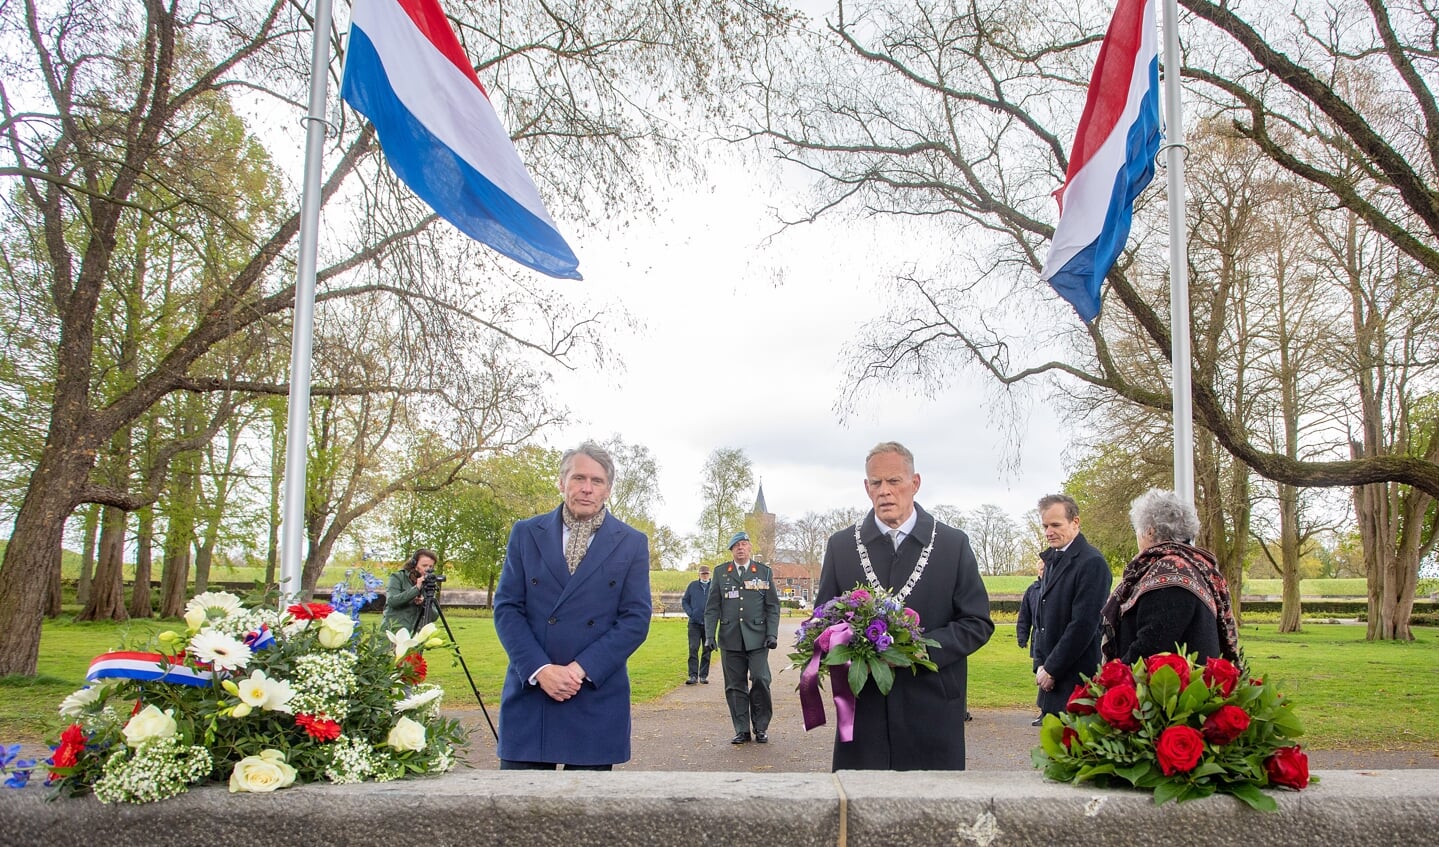 Burgemeester Ter Heegde en wethouder Schimmel stonden vanmiddag stil bij het herdenkingsmonument aan de Burgemeester van Wettumweg in Naarden.